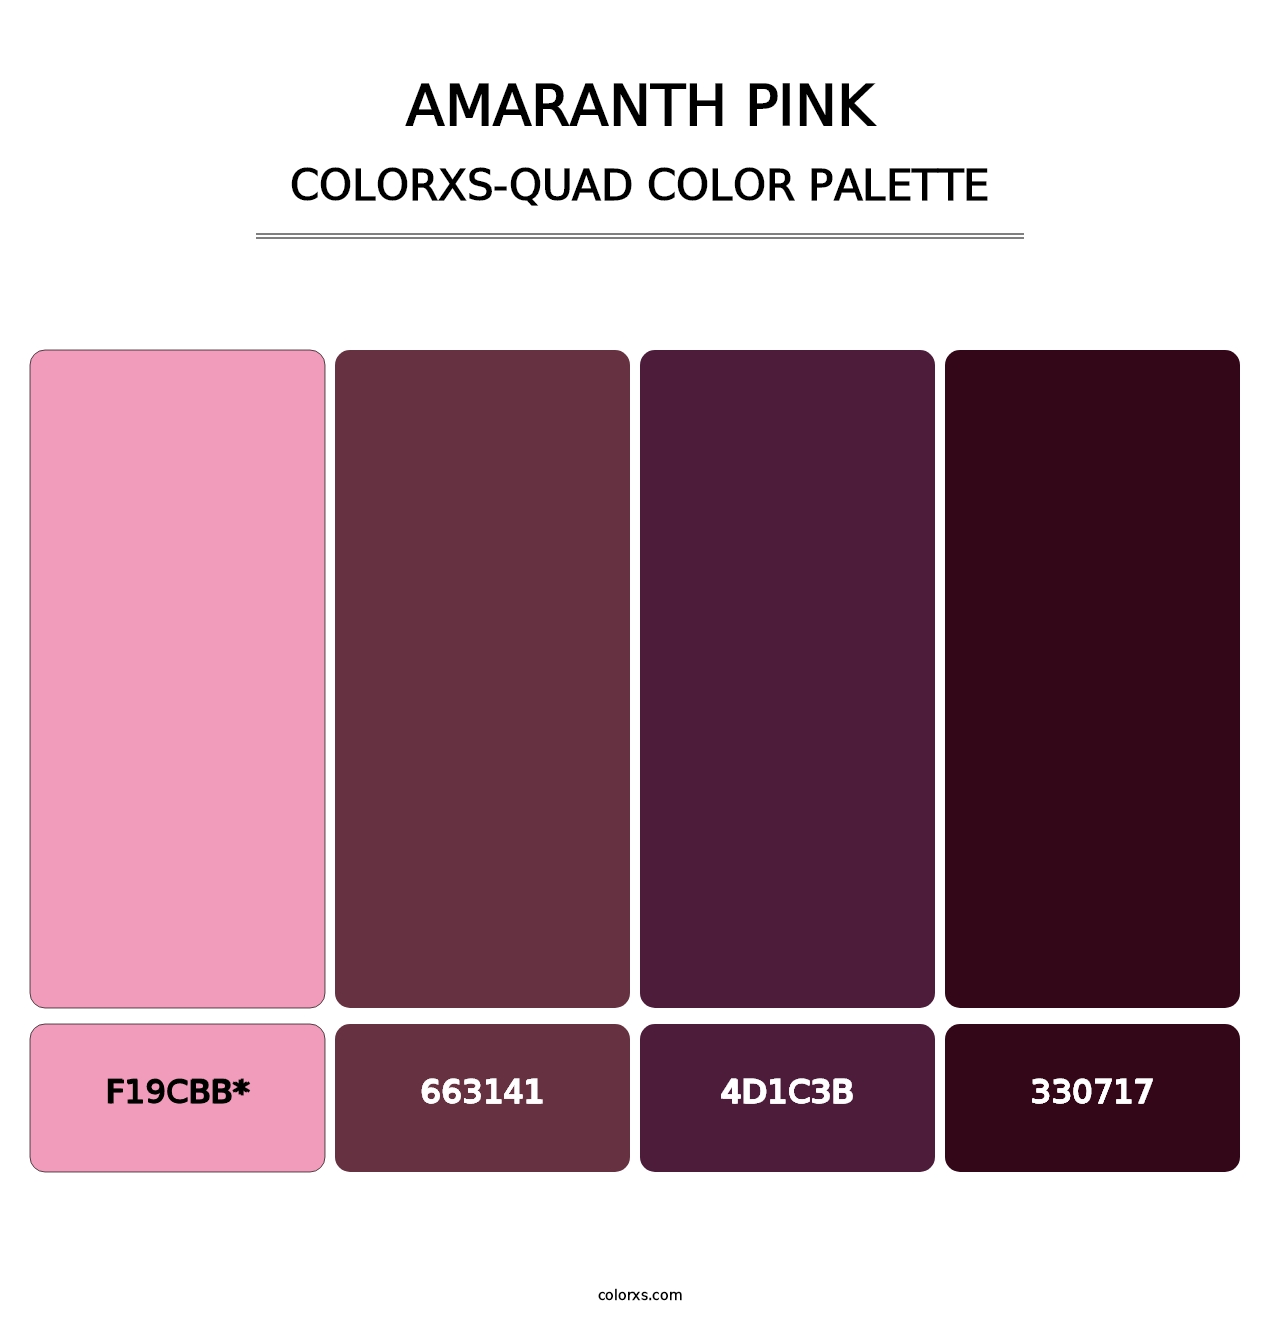 Amaranth Pink - Colorxs Quad Palette